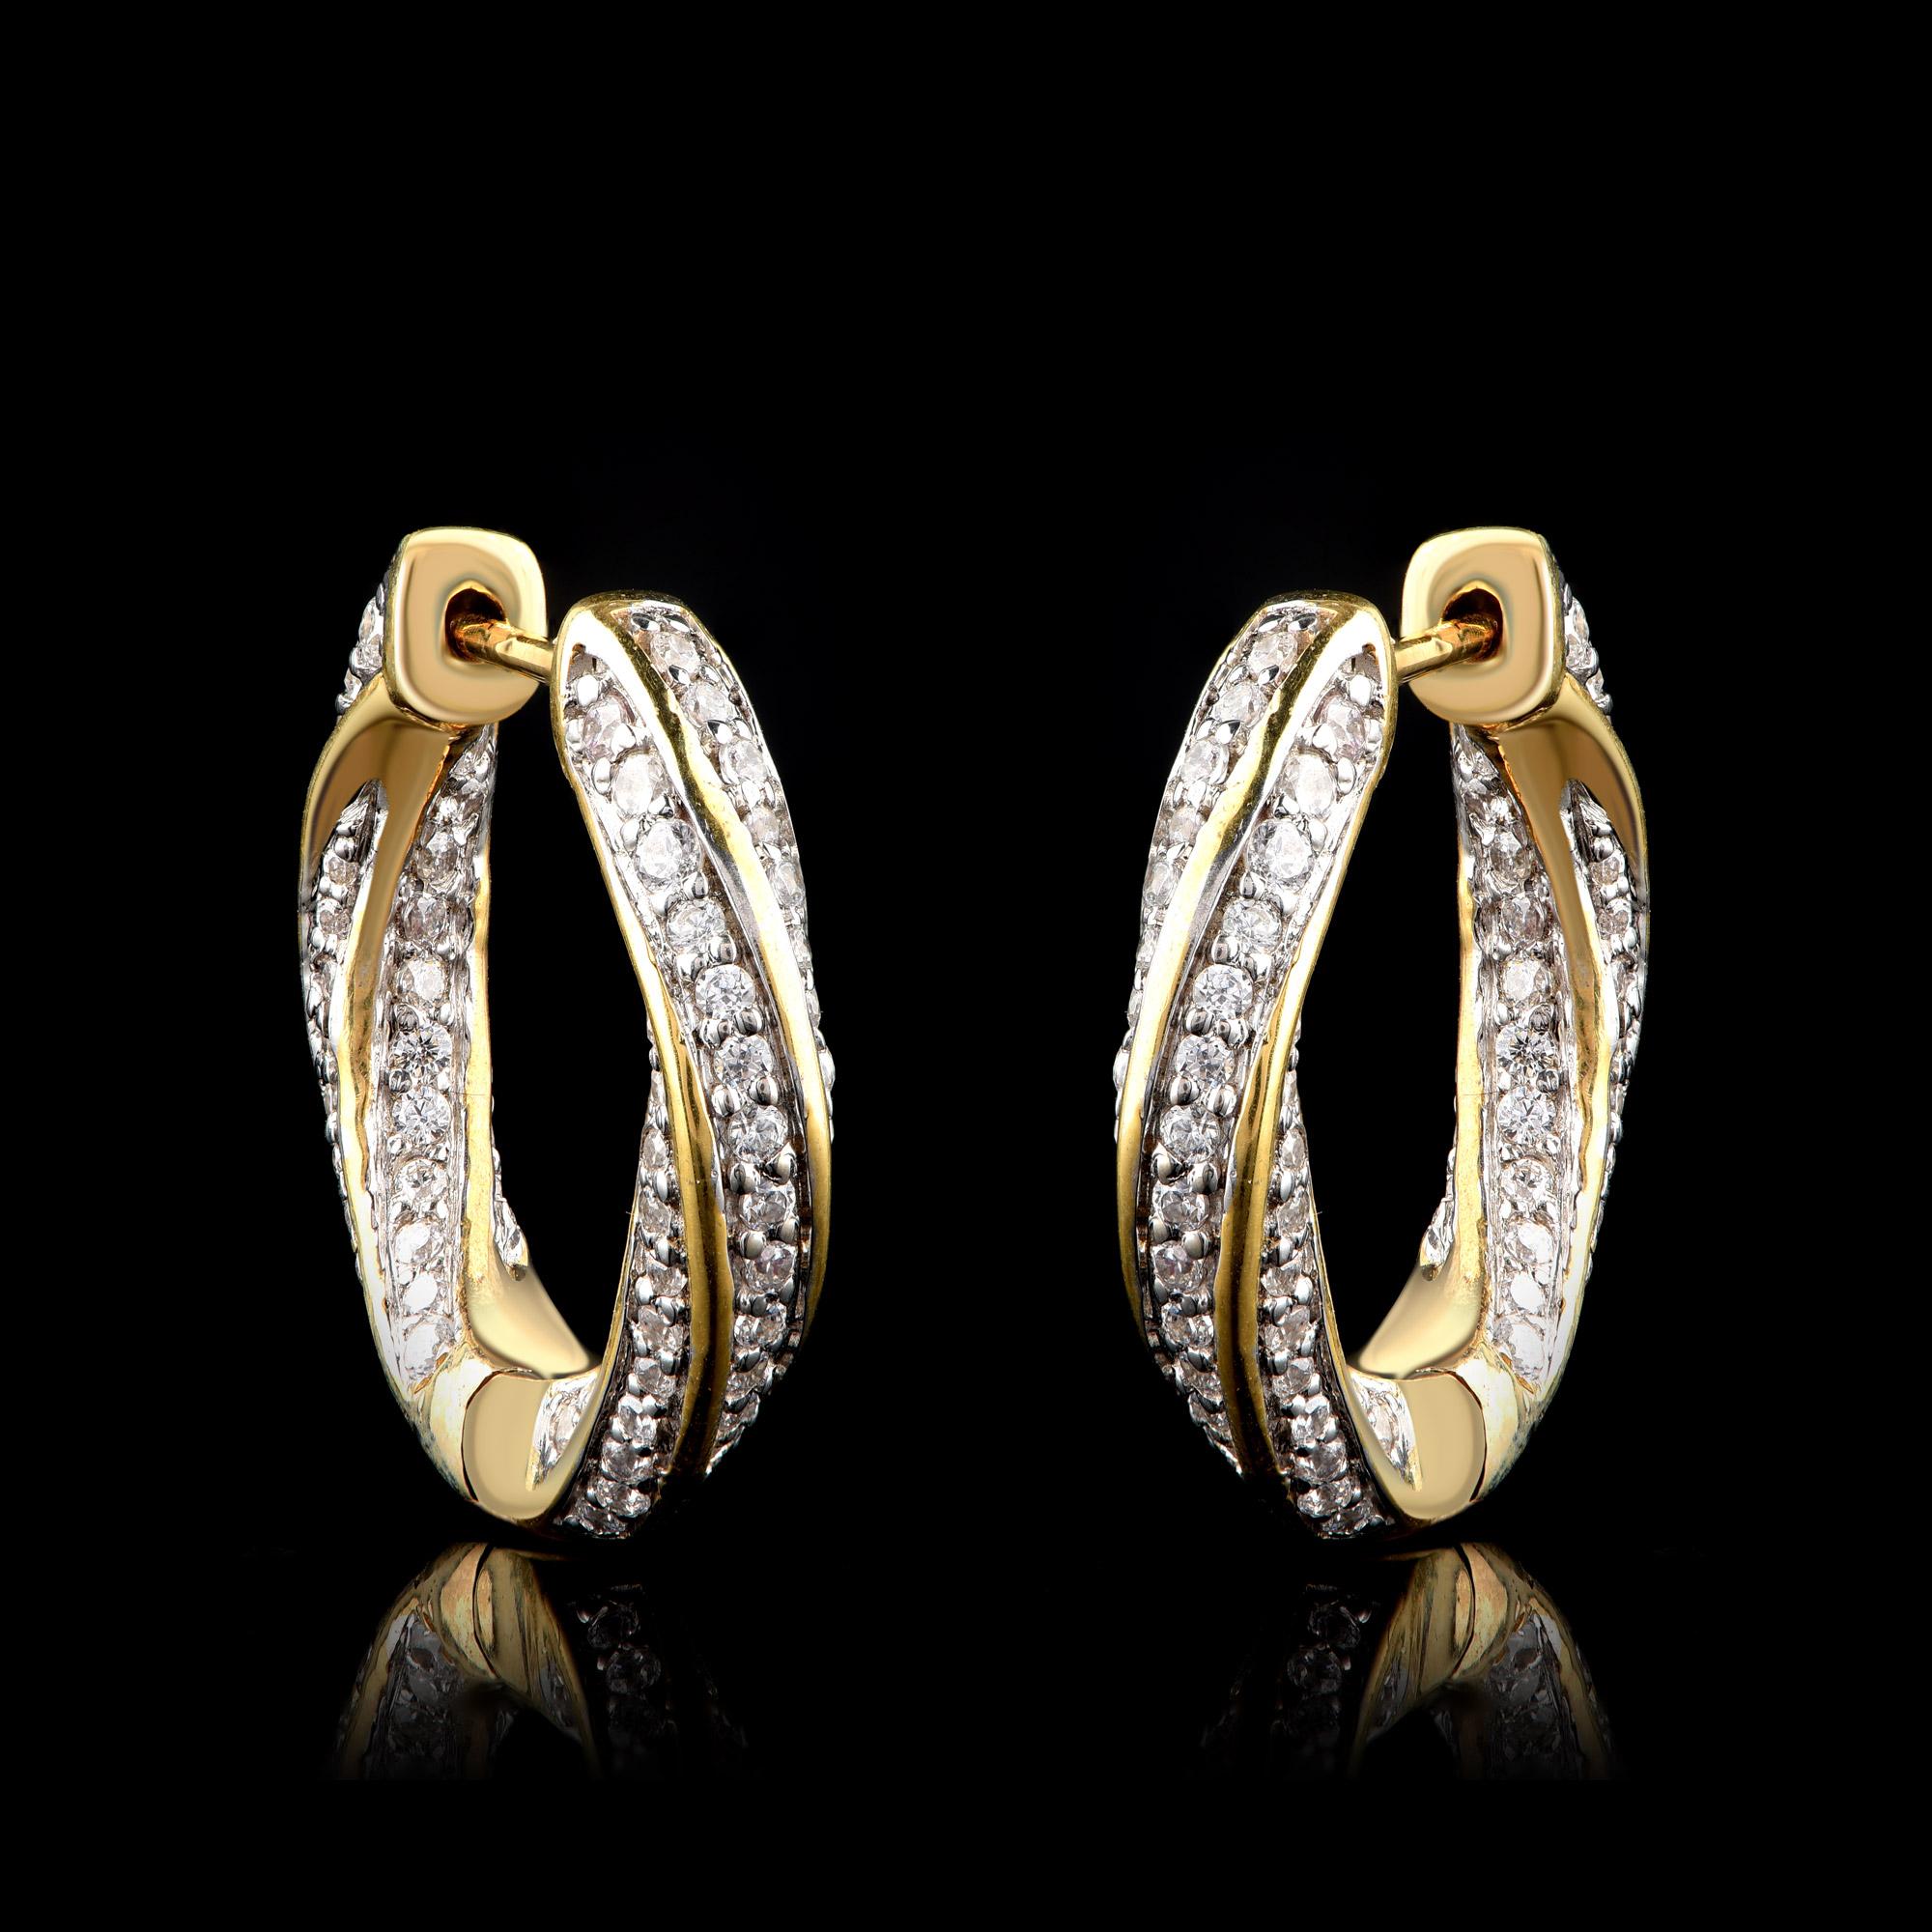 Ces superbes boucles d'oreilles en diamant sont ornées de 208 diamants taille brillant en sertissage pavé. Ils sont conçus en or jaune 18 carats. Les diamants sont de couleur H-I et de pureté I2.